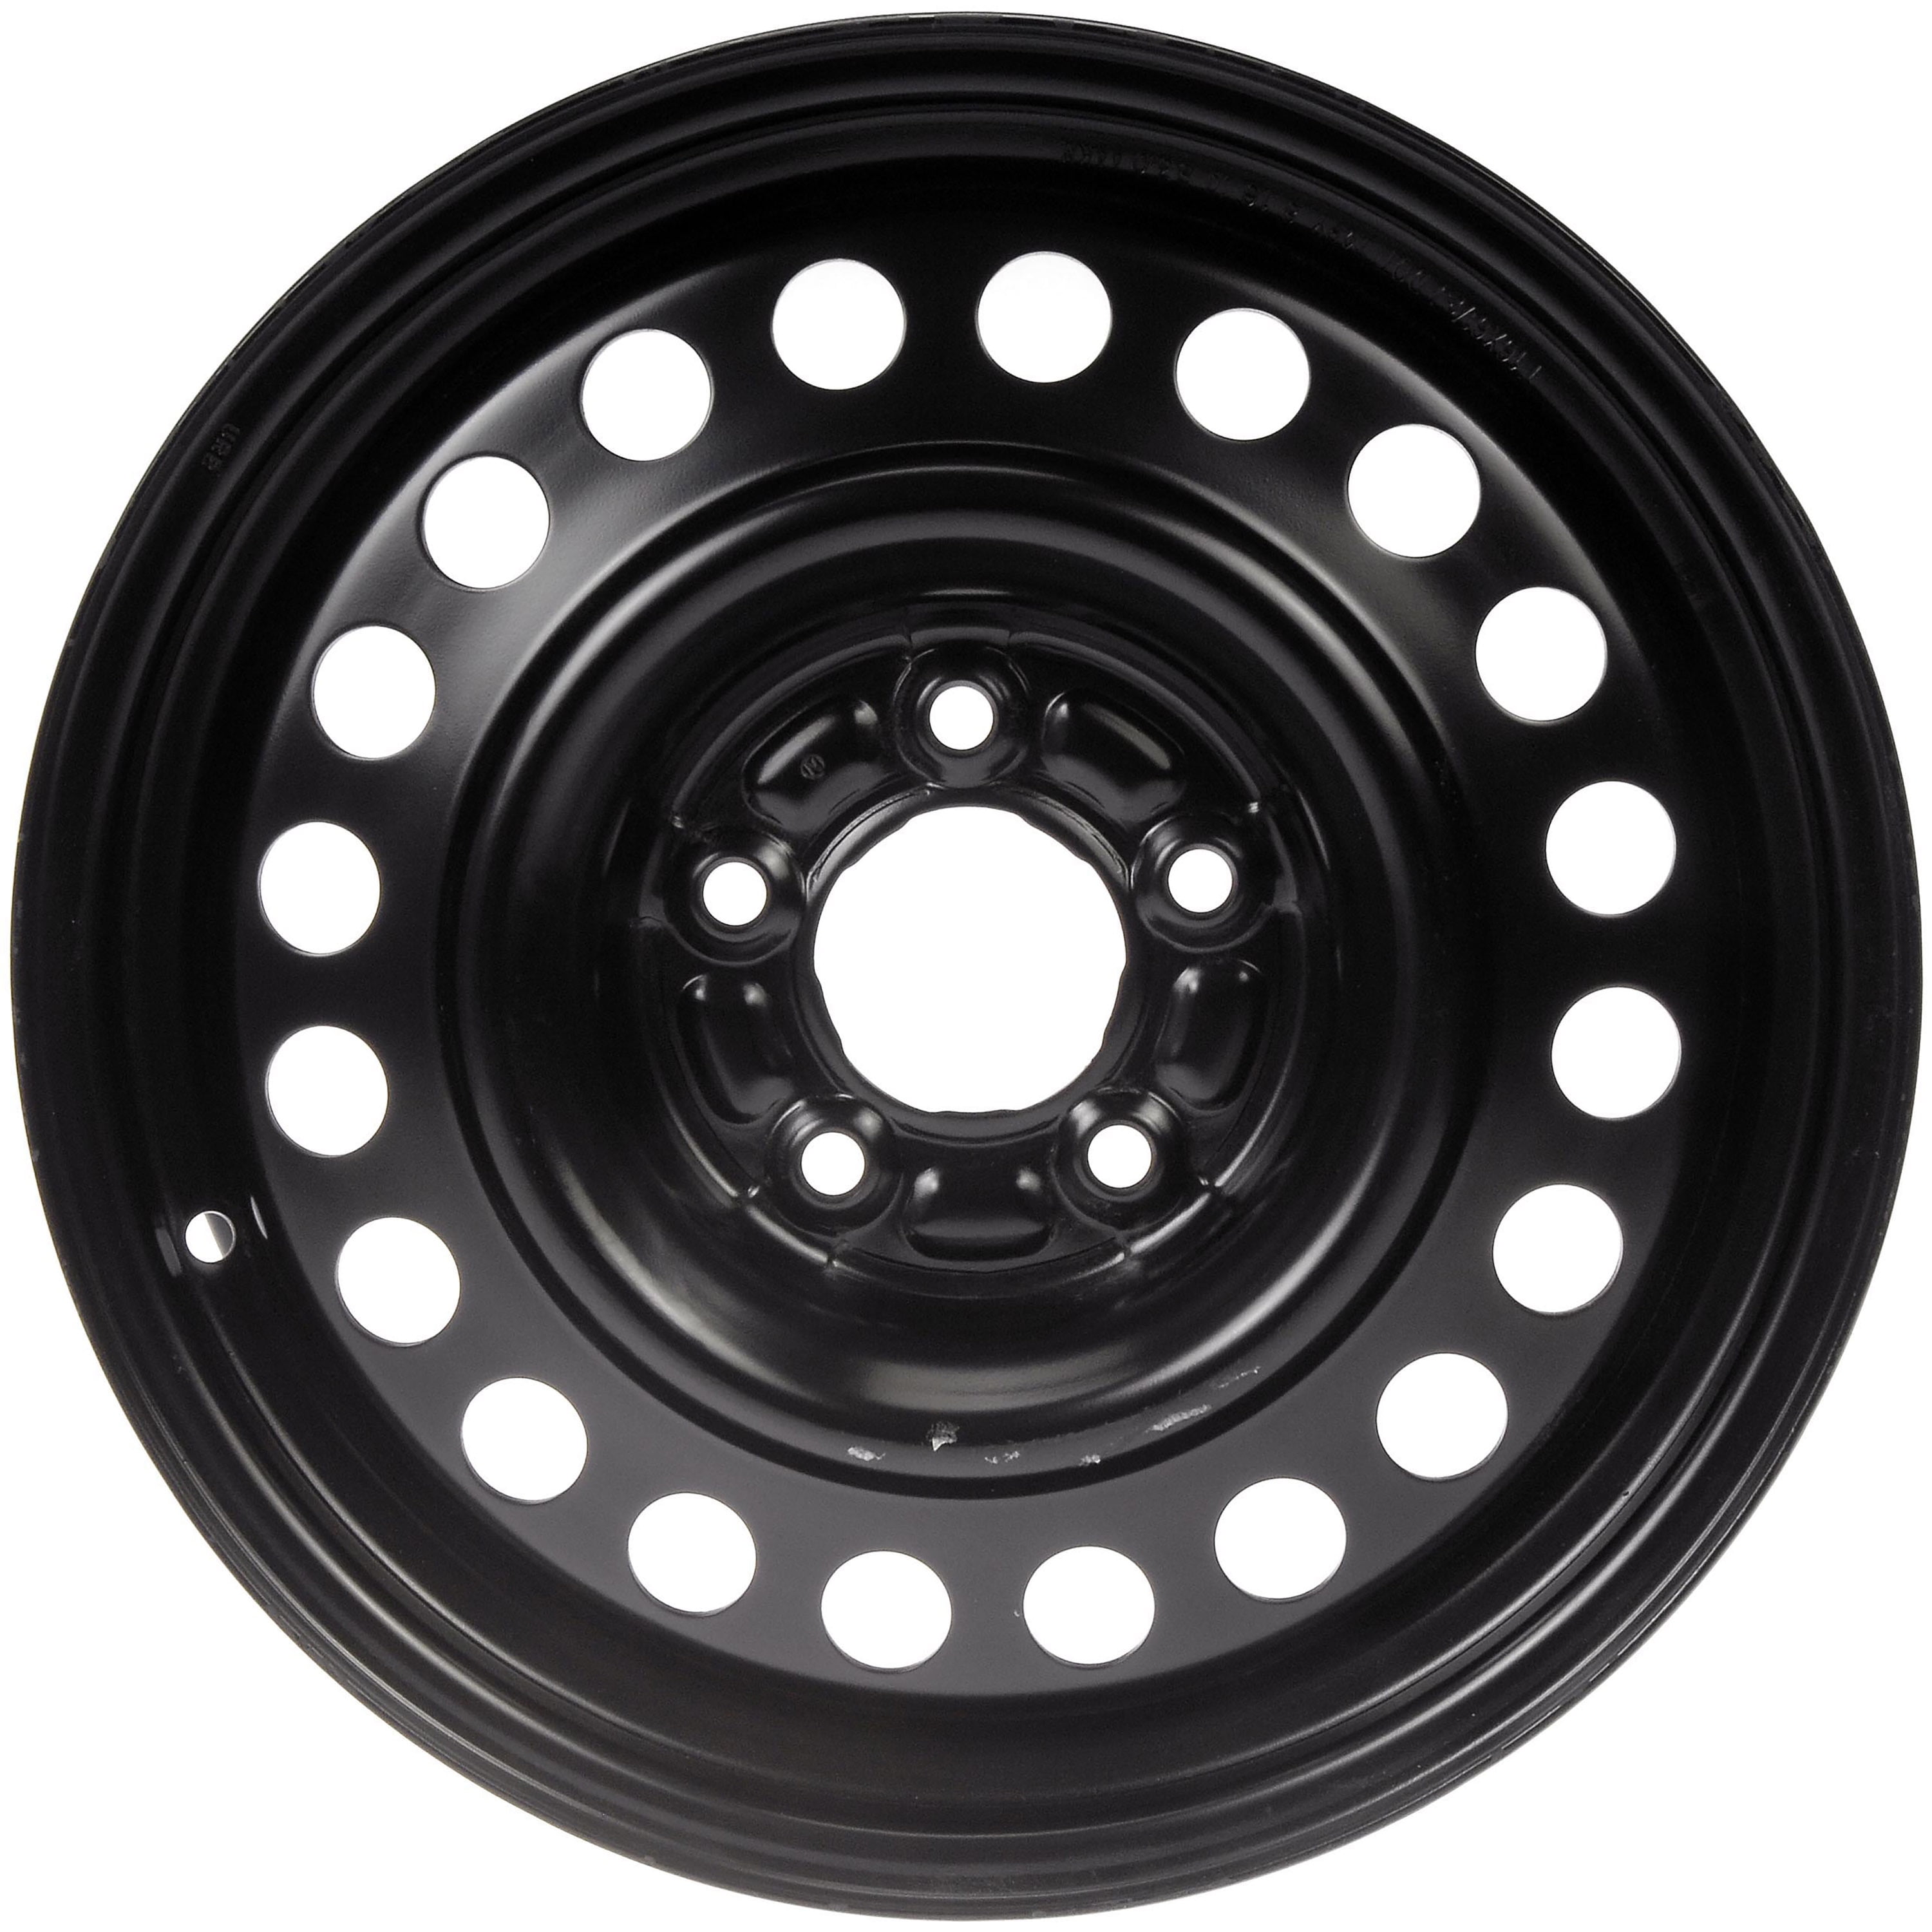 Dorman 939-138 Wheel for Specific Chevrolet Models, Black